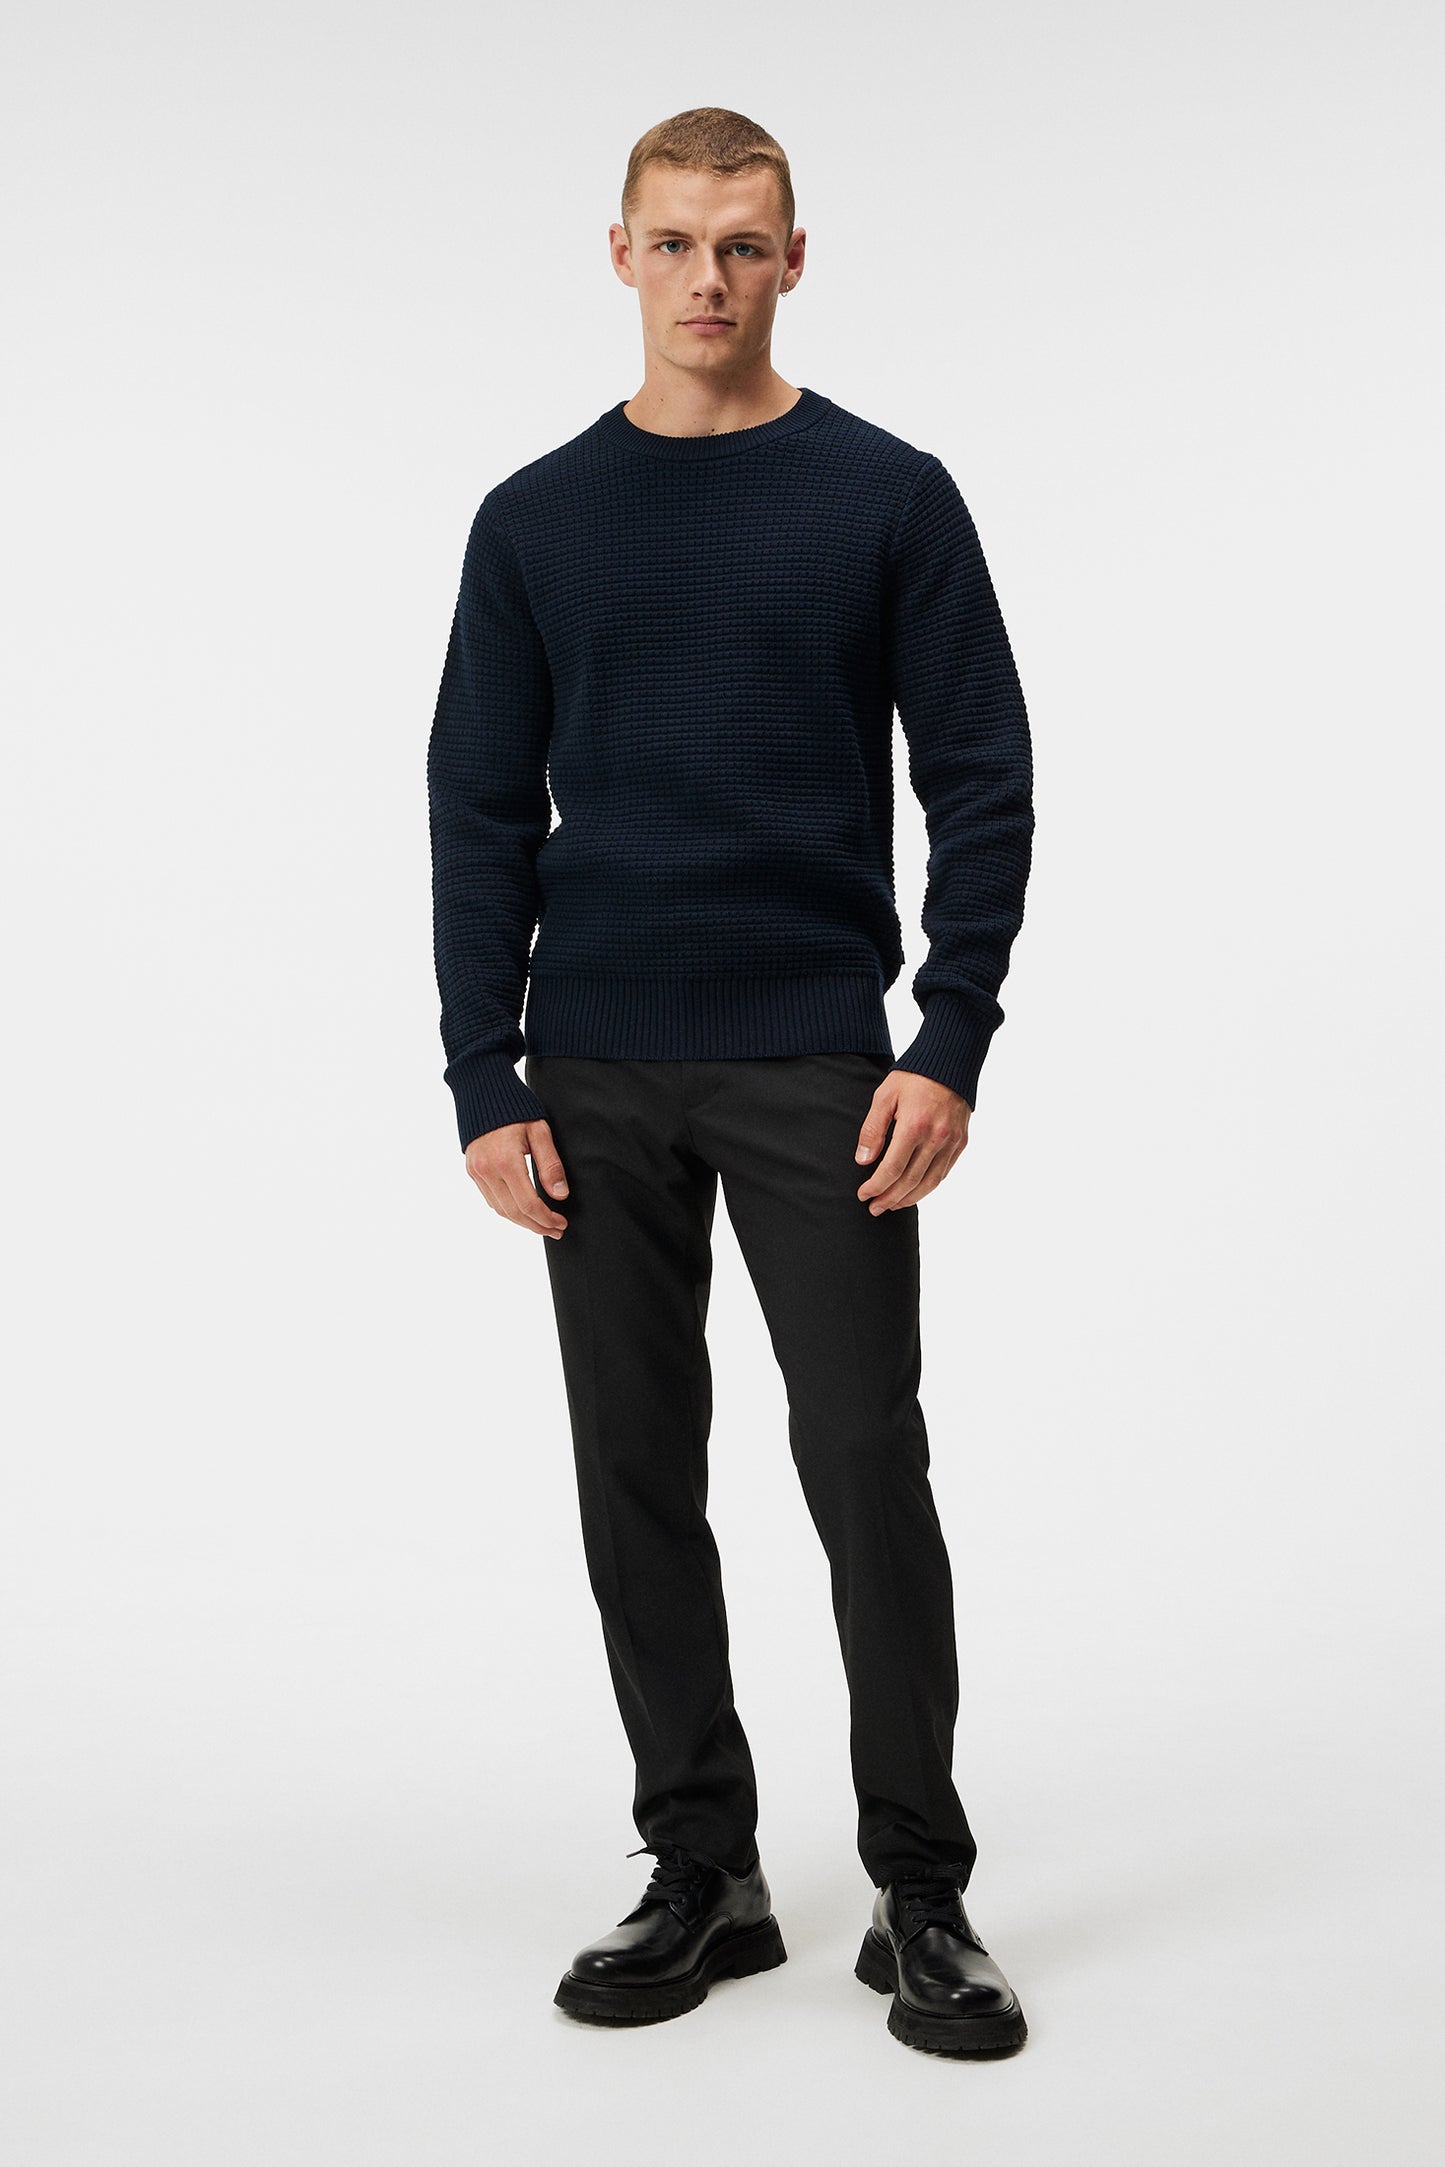 Oliver Structure Sweater / JL Navy – J.Lindeberg